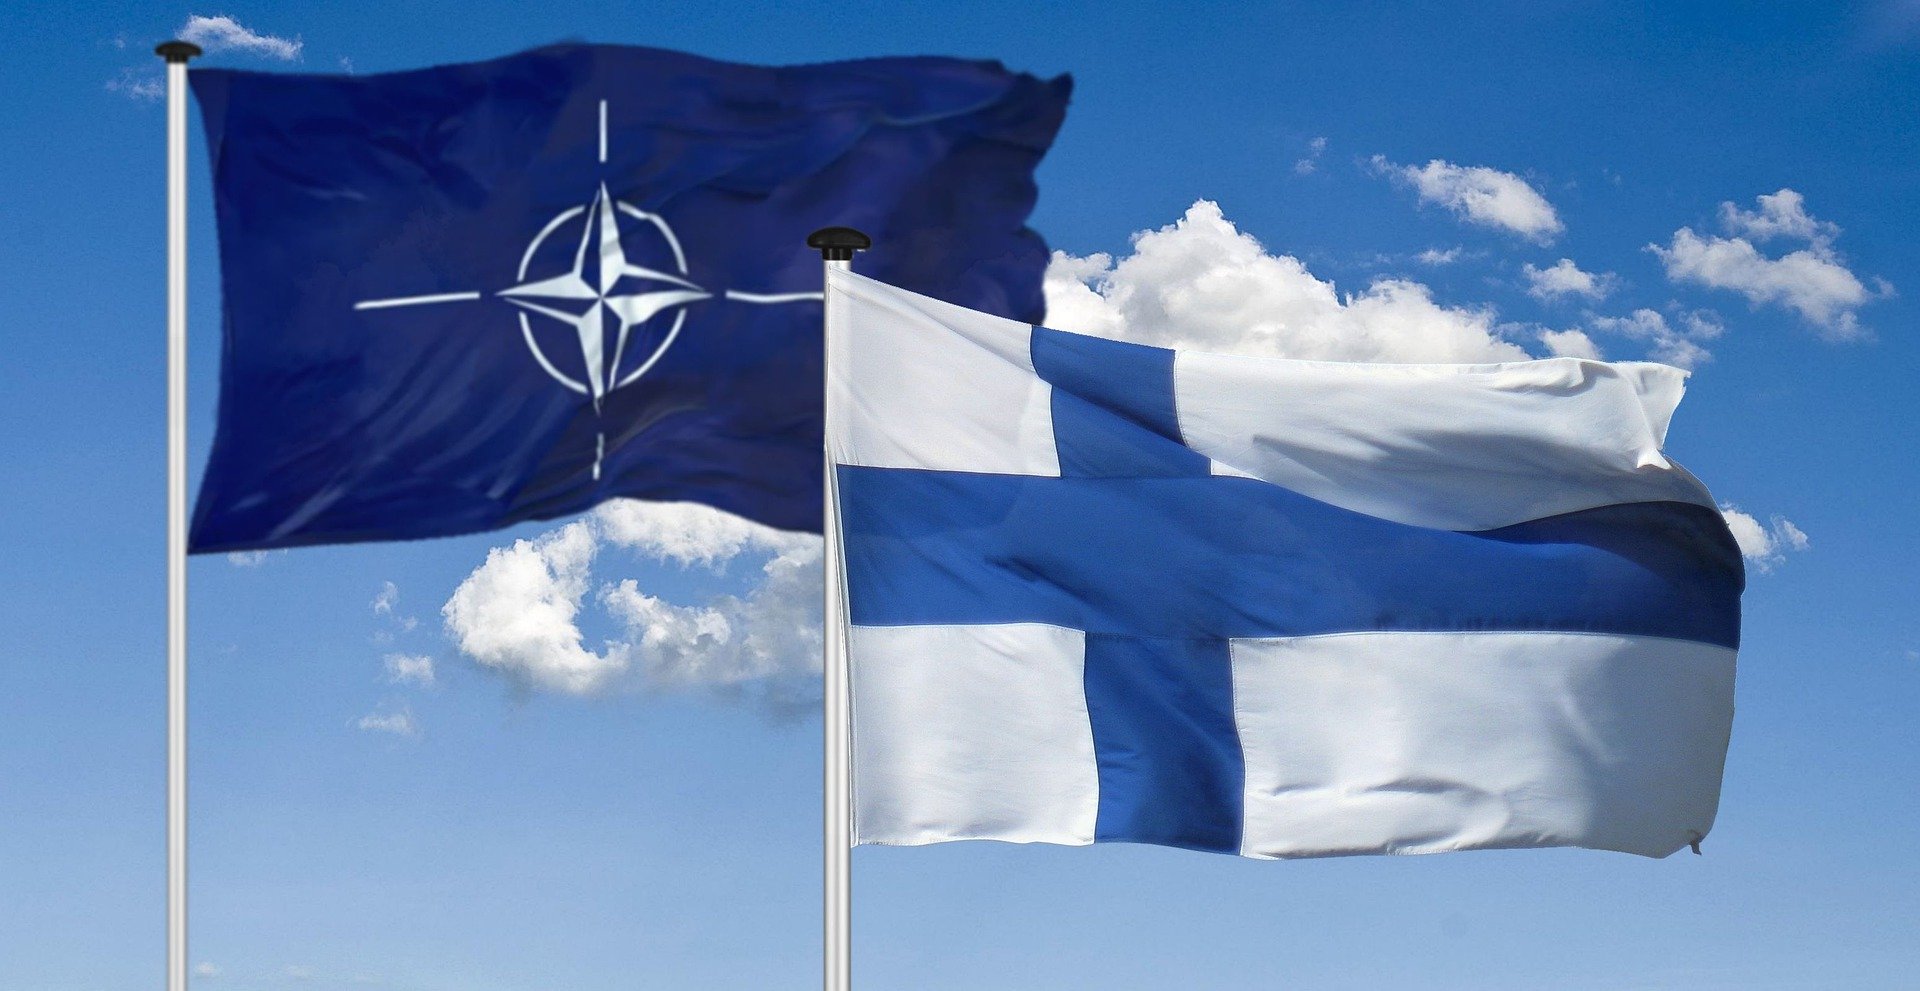 Генсек НАТО получил заявки Швеции и Финляндии на вступление в альянс